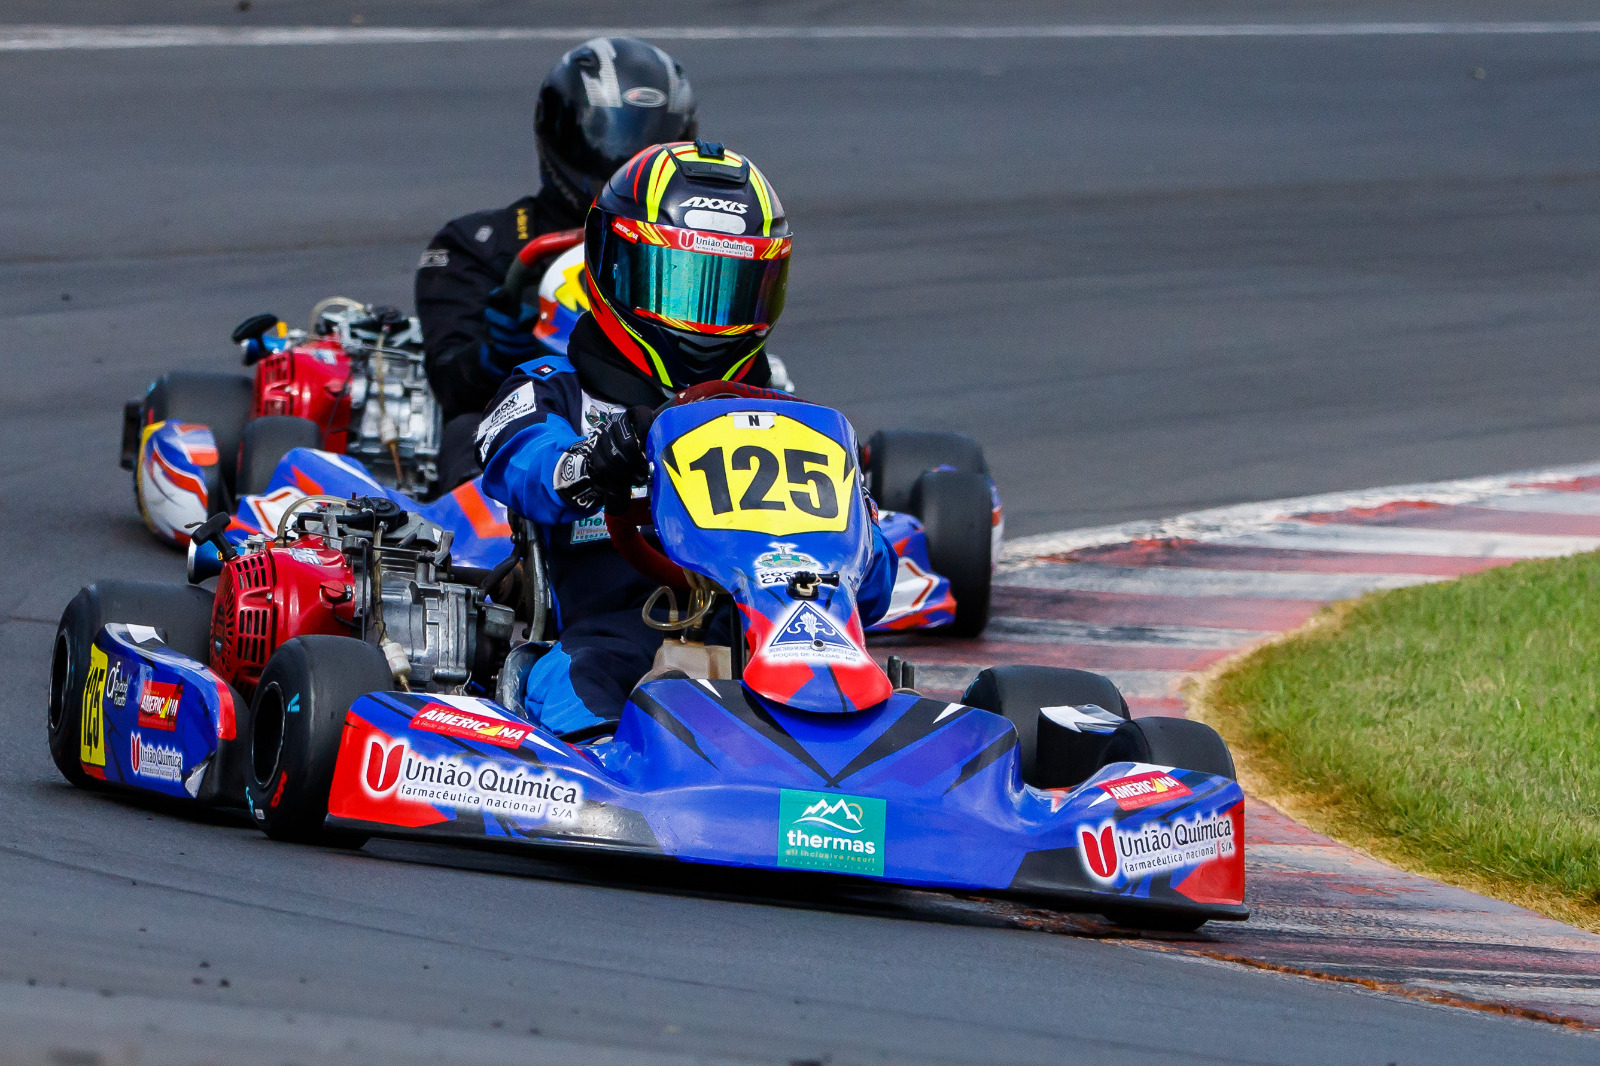 Piloto poços-caldense assegura 3ª posição no Campeonato San Marino de Kart